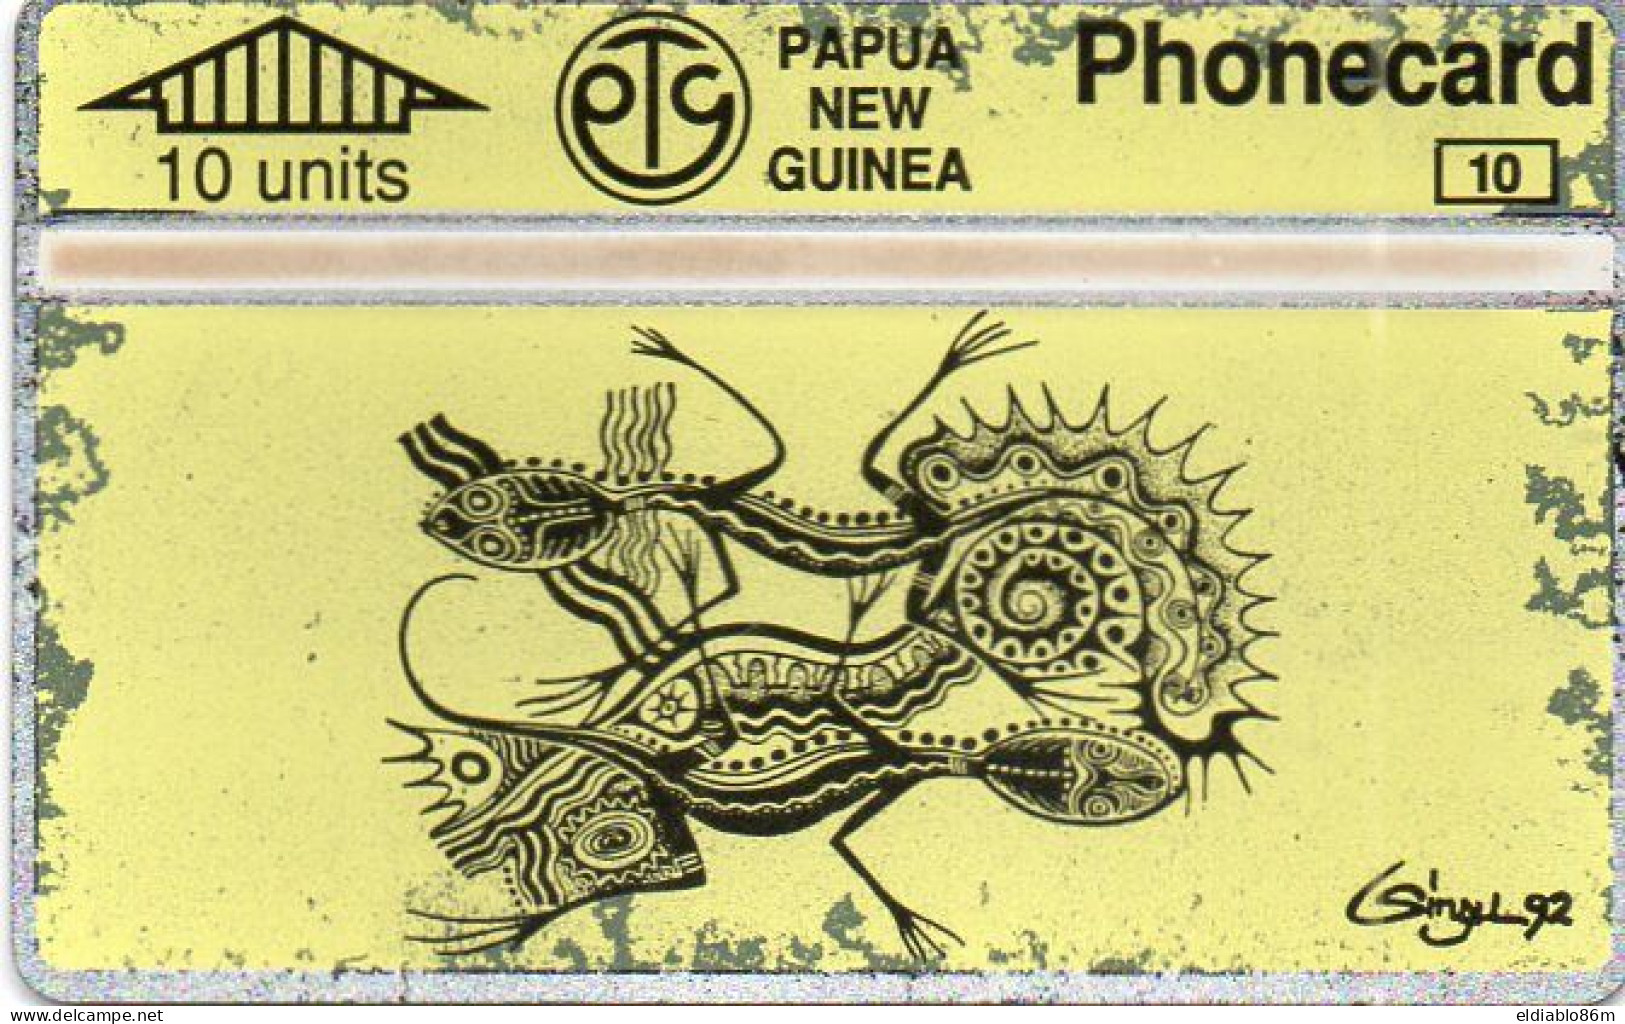 PAPUA NEW GUINEA - L&G - PNG-23 - ART YELLOW CARD - 401A - Papua Nueva Guinea